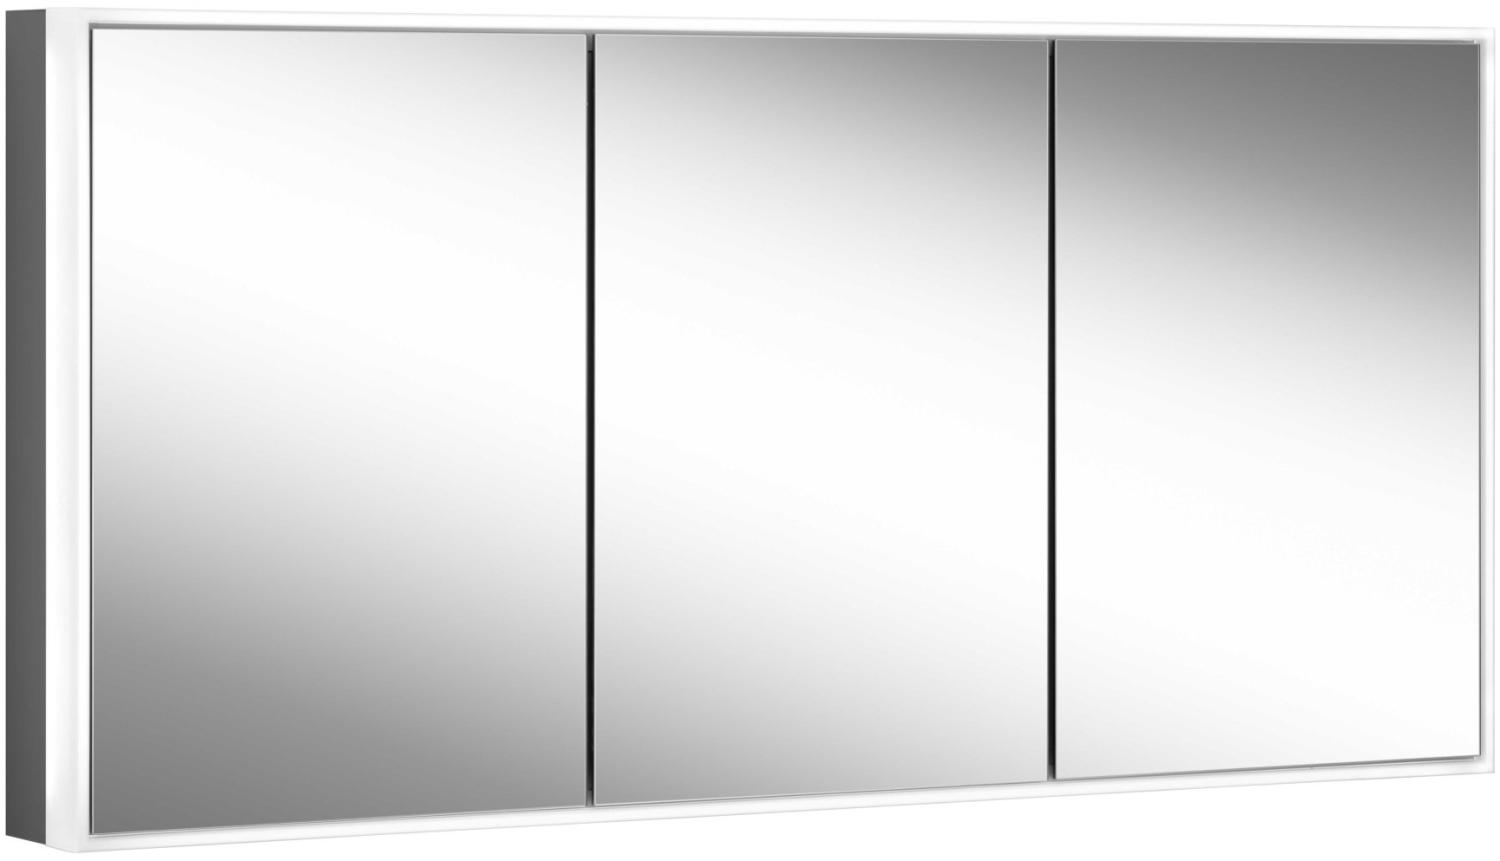 Schneider PREMIUM Line Ultimate LED Lichtspiegelschrank, 3 gleichgrosse Doppelspiegeltüren, 1825x73,3x15,8cm, 182. 180, Ausführung: EU-Norm/Korpus schwarz matt - 182. 180. 02. 41 Bild 1